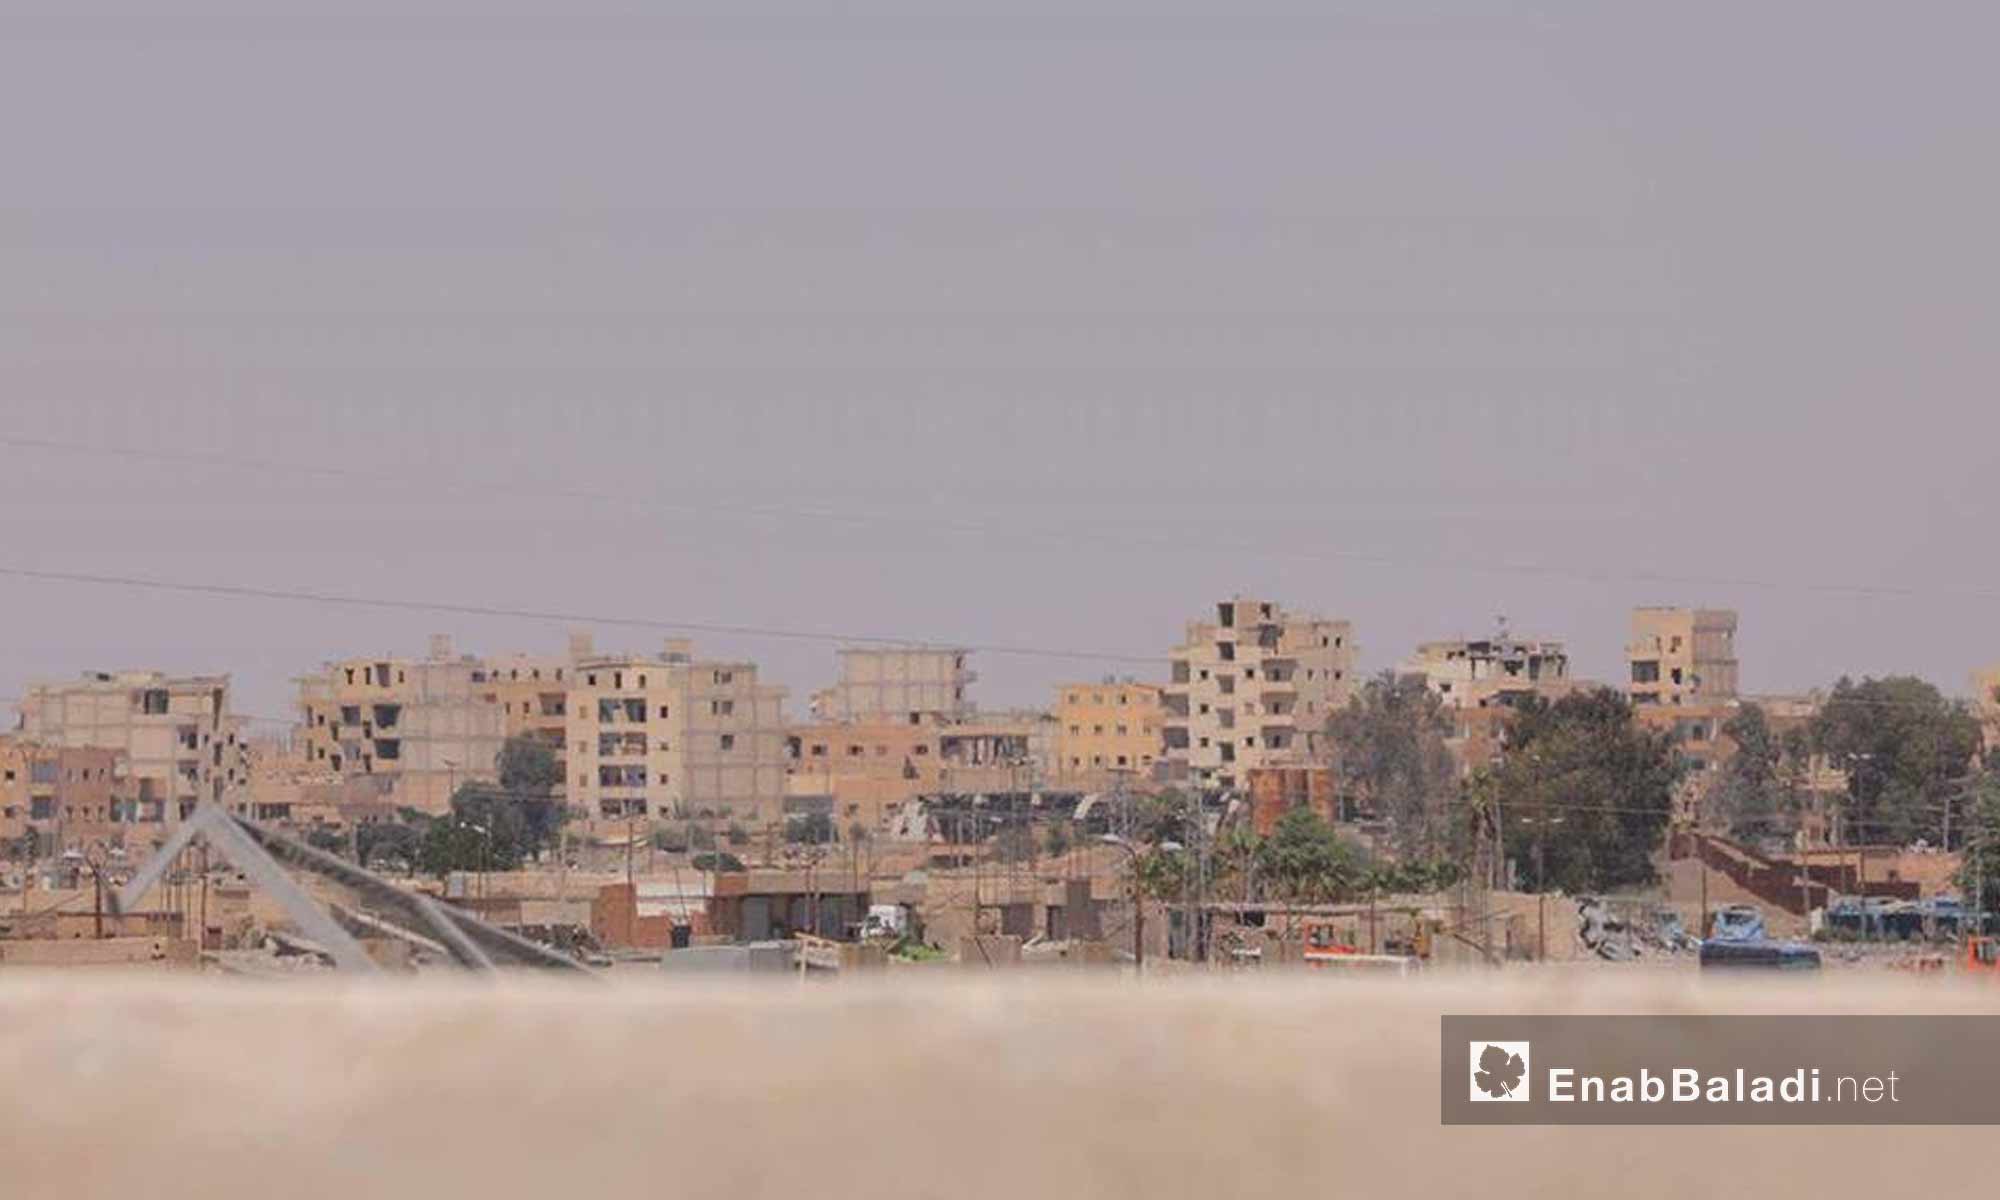 حي الصناعة في مدينة الرقة بعد سيطرة قوات سوريا الديموقراطية عليه - 28 تموز 2017 - (عنب بلدي)